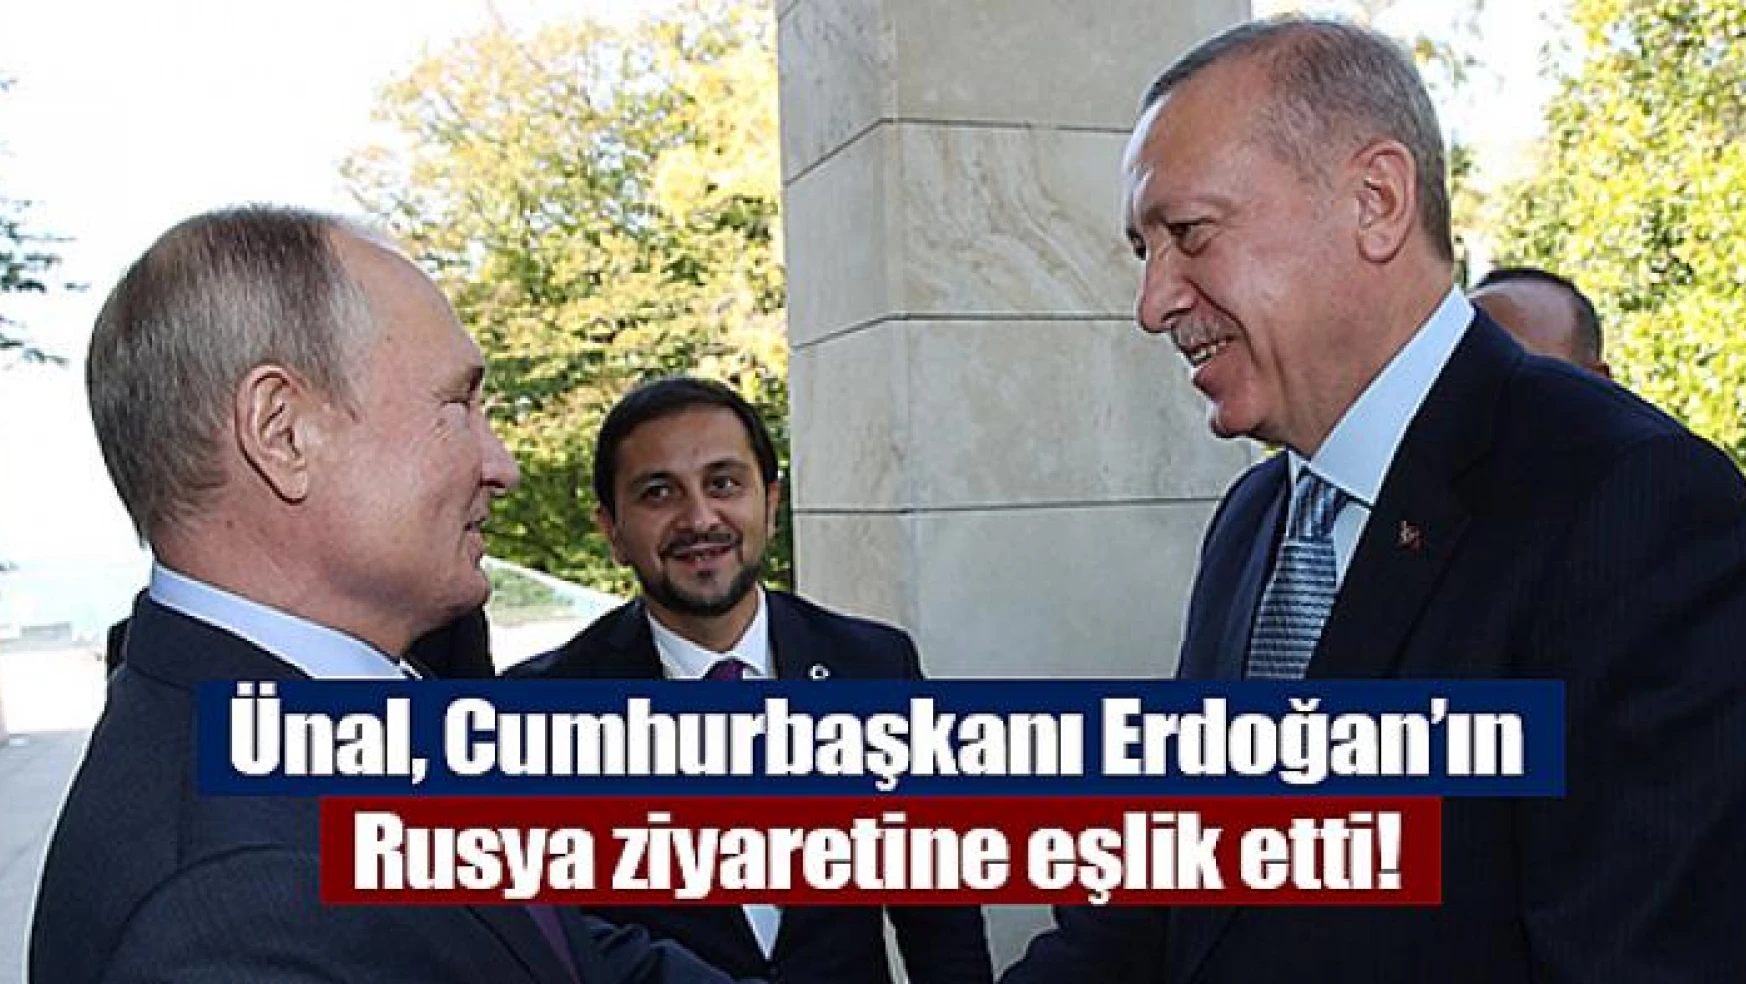 Ünal, Cumhurbaşkanı Erdoğan'ın Rusya ziyaretine eşlik etti!